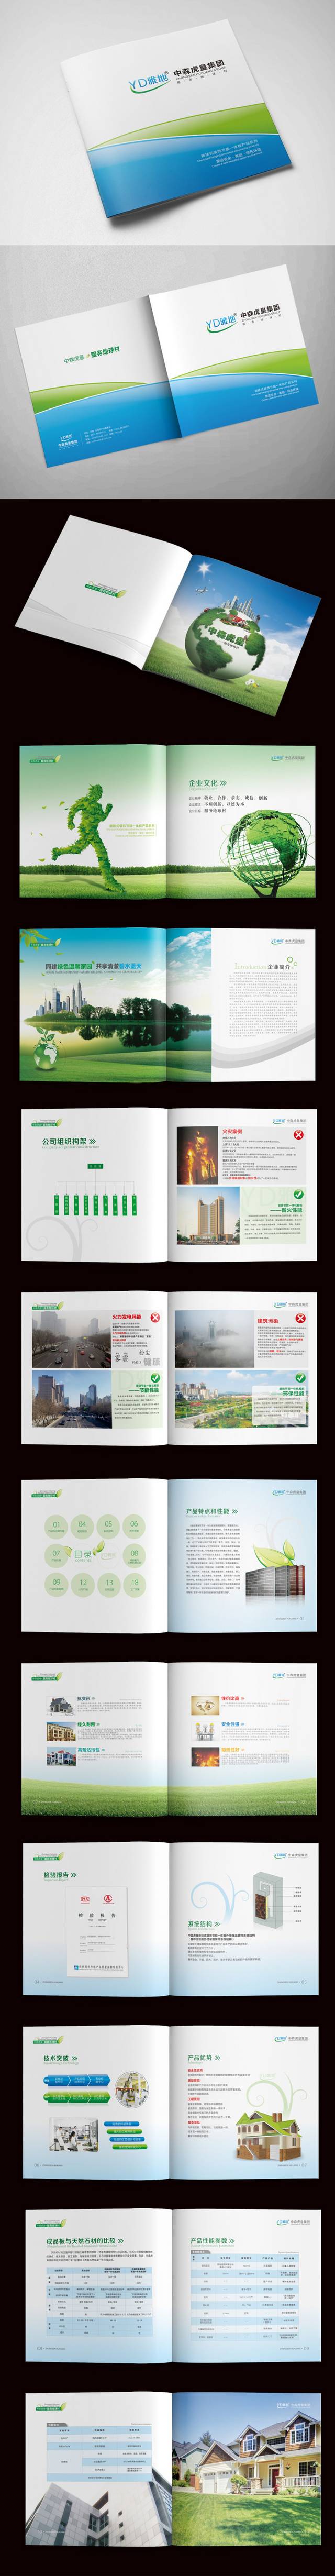 低碳环保工程画册设计